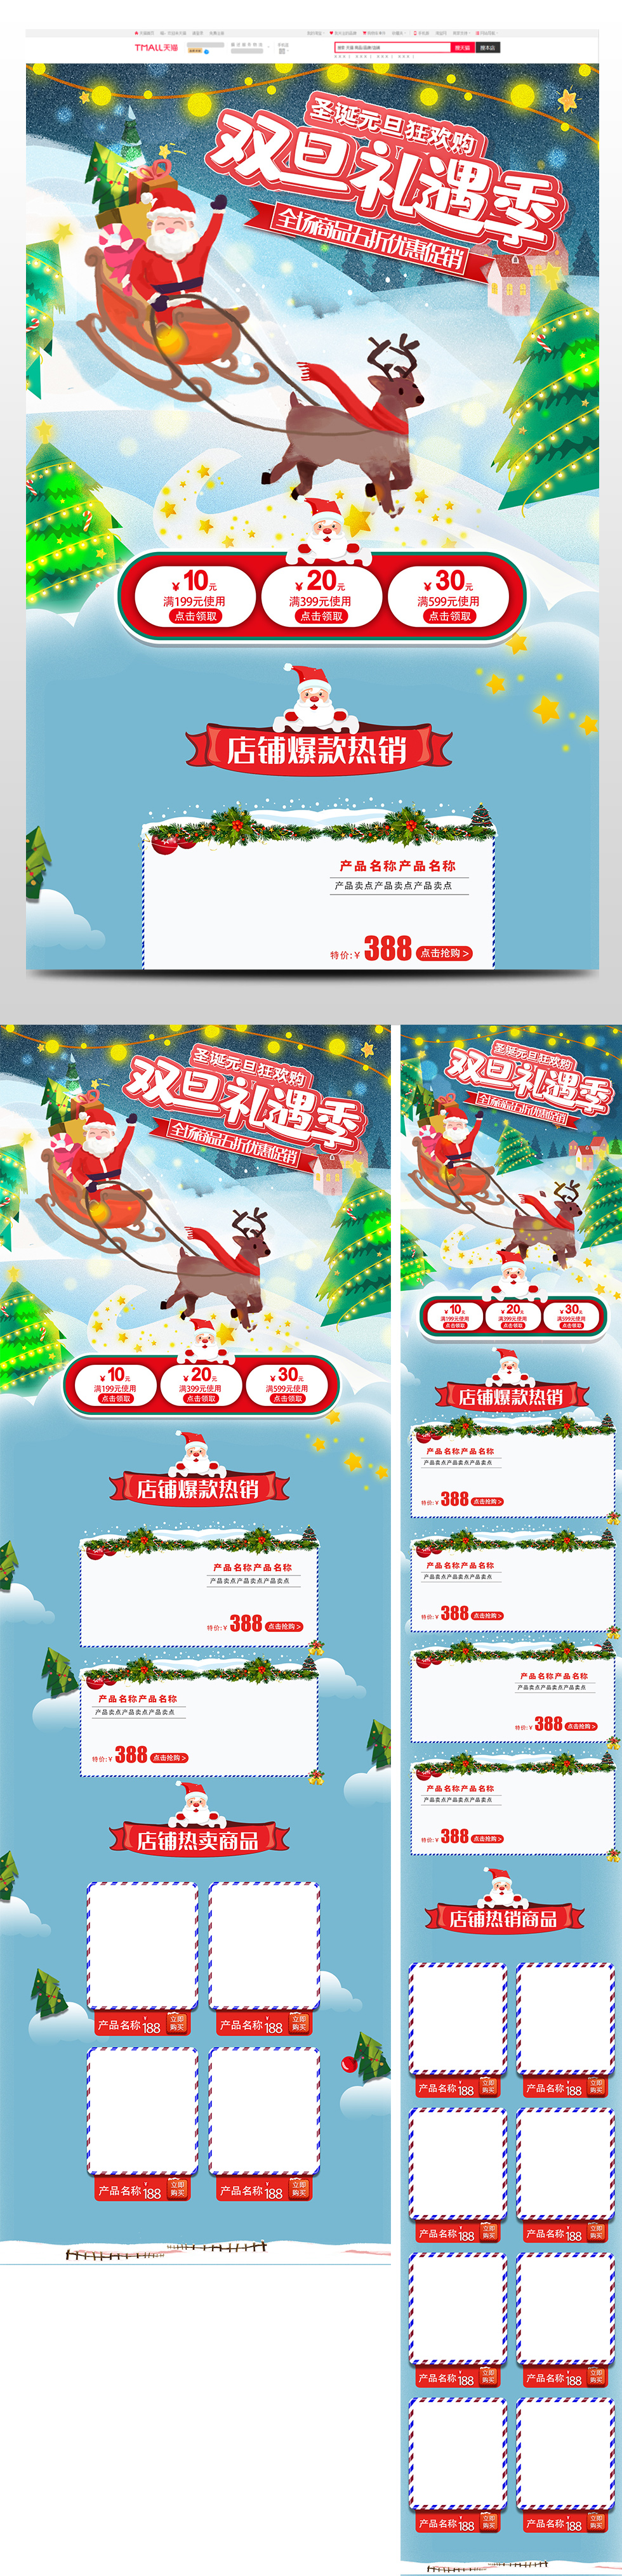 喜庆双旦礼遇季圣诞节元旦节促销天猫首页电商圣诞节首页 48.JPG